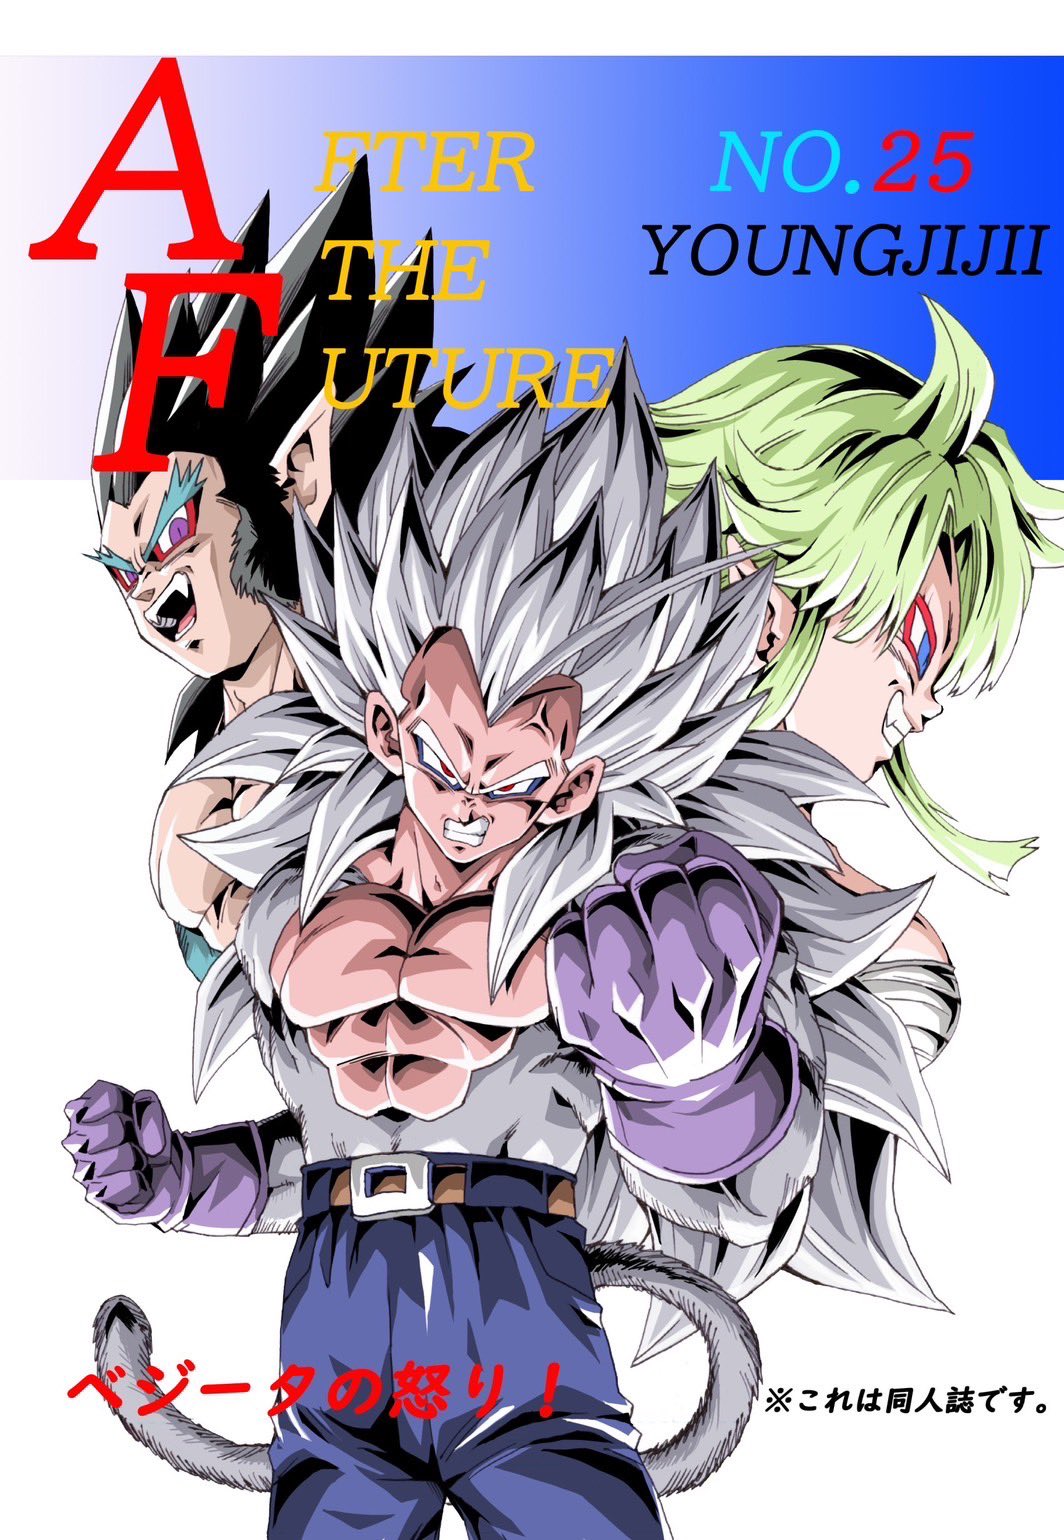 Dragon Ball AF (Young Jijii) (Doujinshi) cover 0